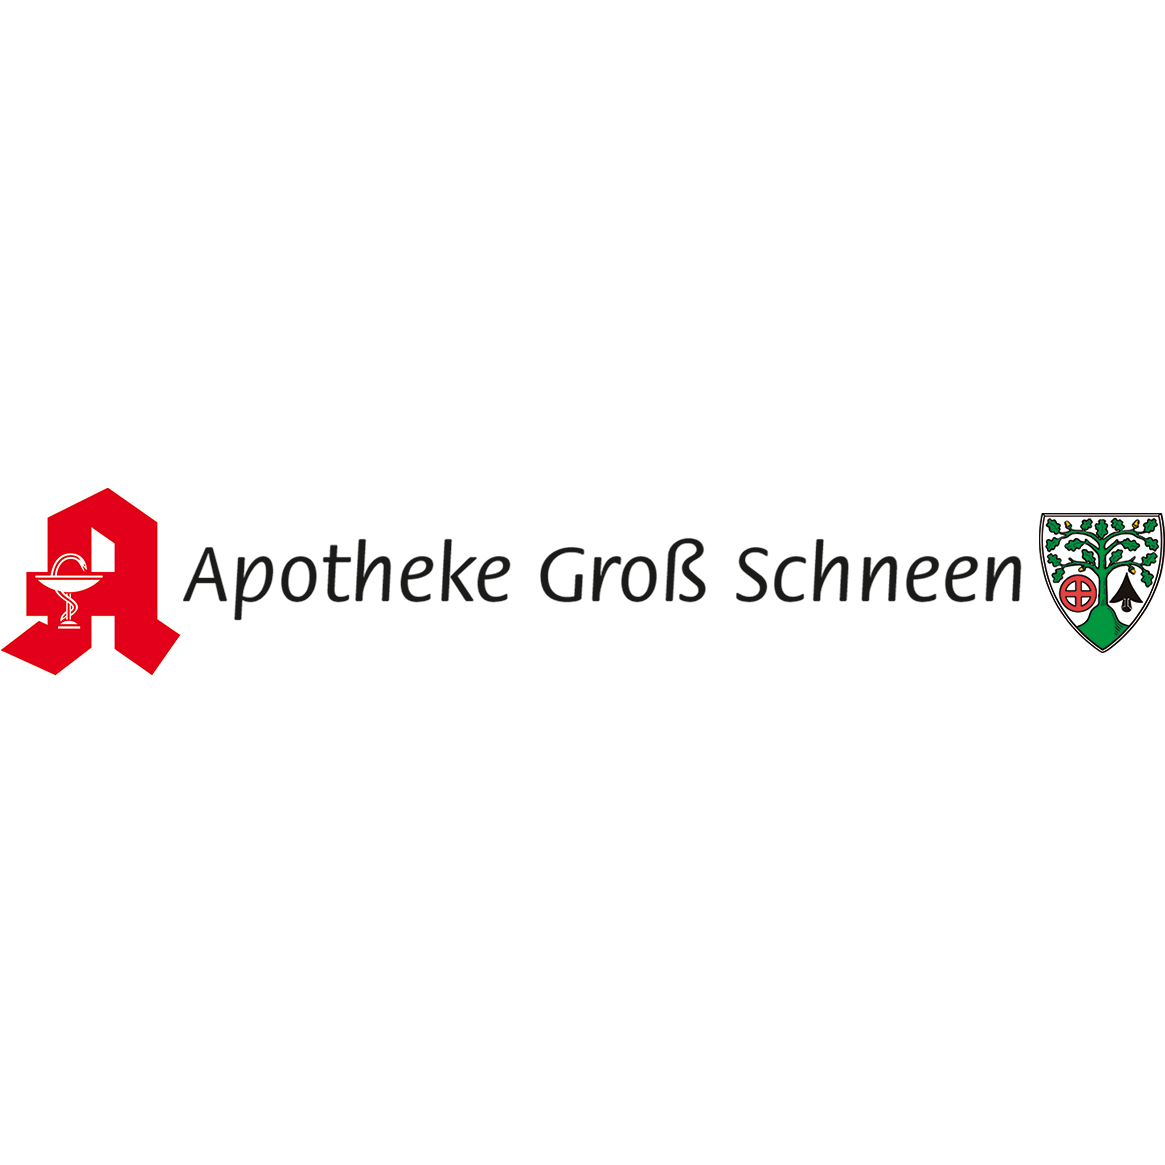 Apotheke Groß Schneen in Friedland Kreis Göttingen - Logo